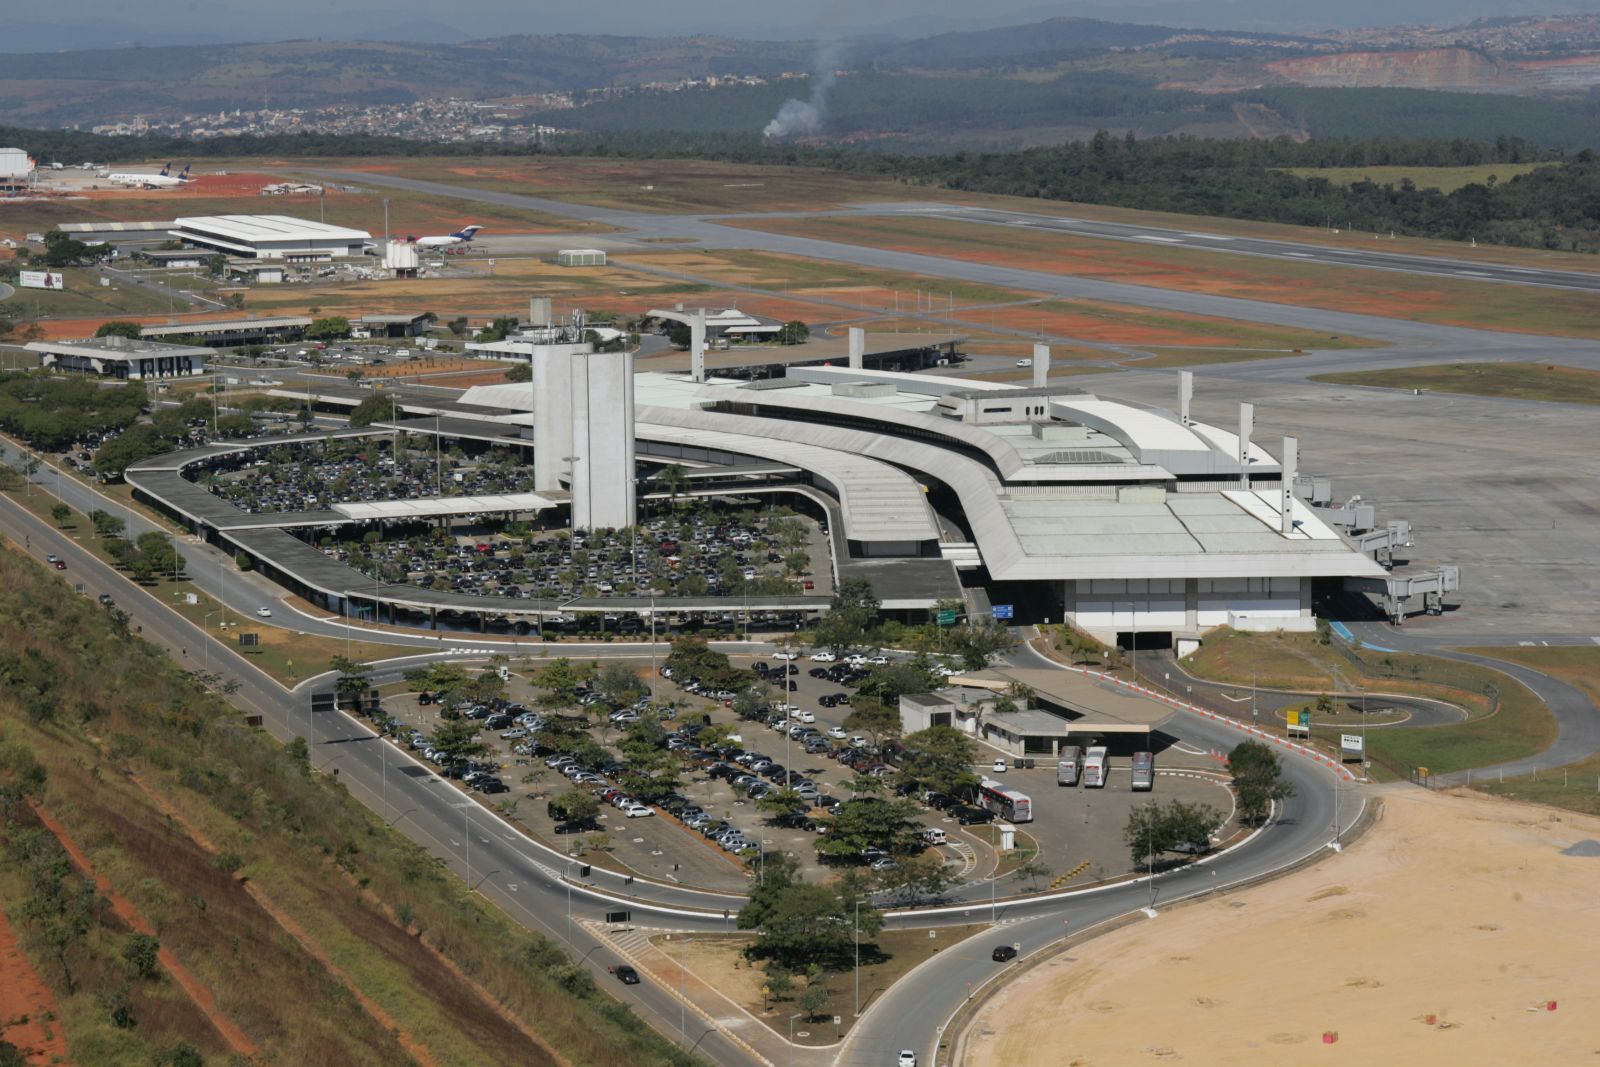 BH Airport - Aeroporto Internacional de BH - Minas Gerais é nosso cantinho  e a gente ama demais tudo por aqui. 💙 Ensinar nossa cultura é uma das  formas que temos para